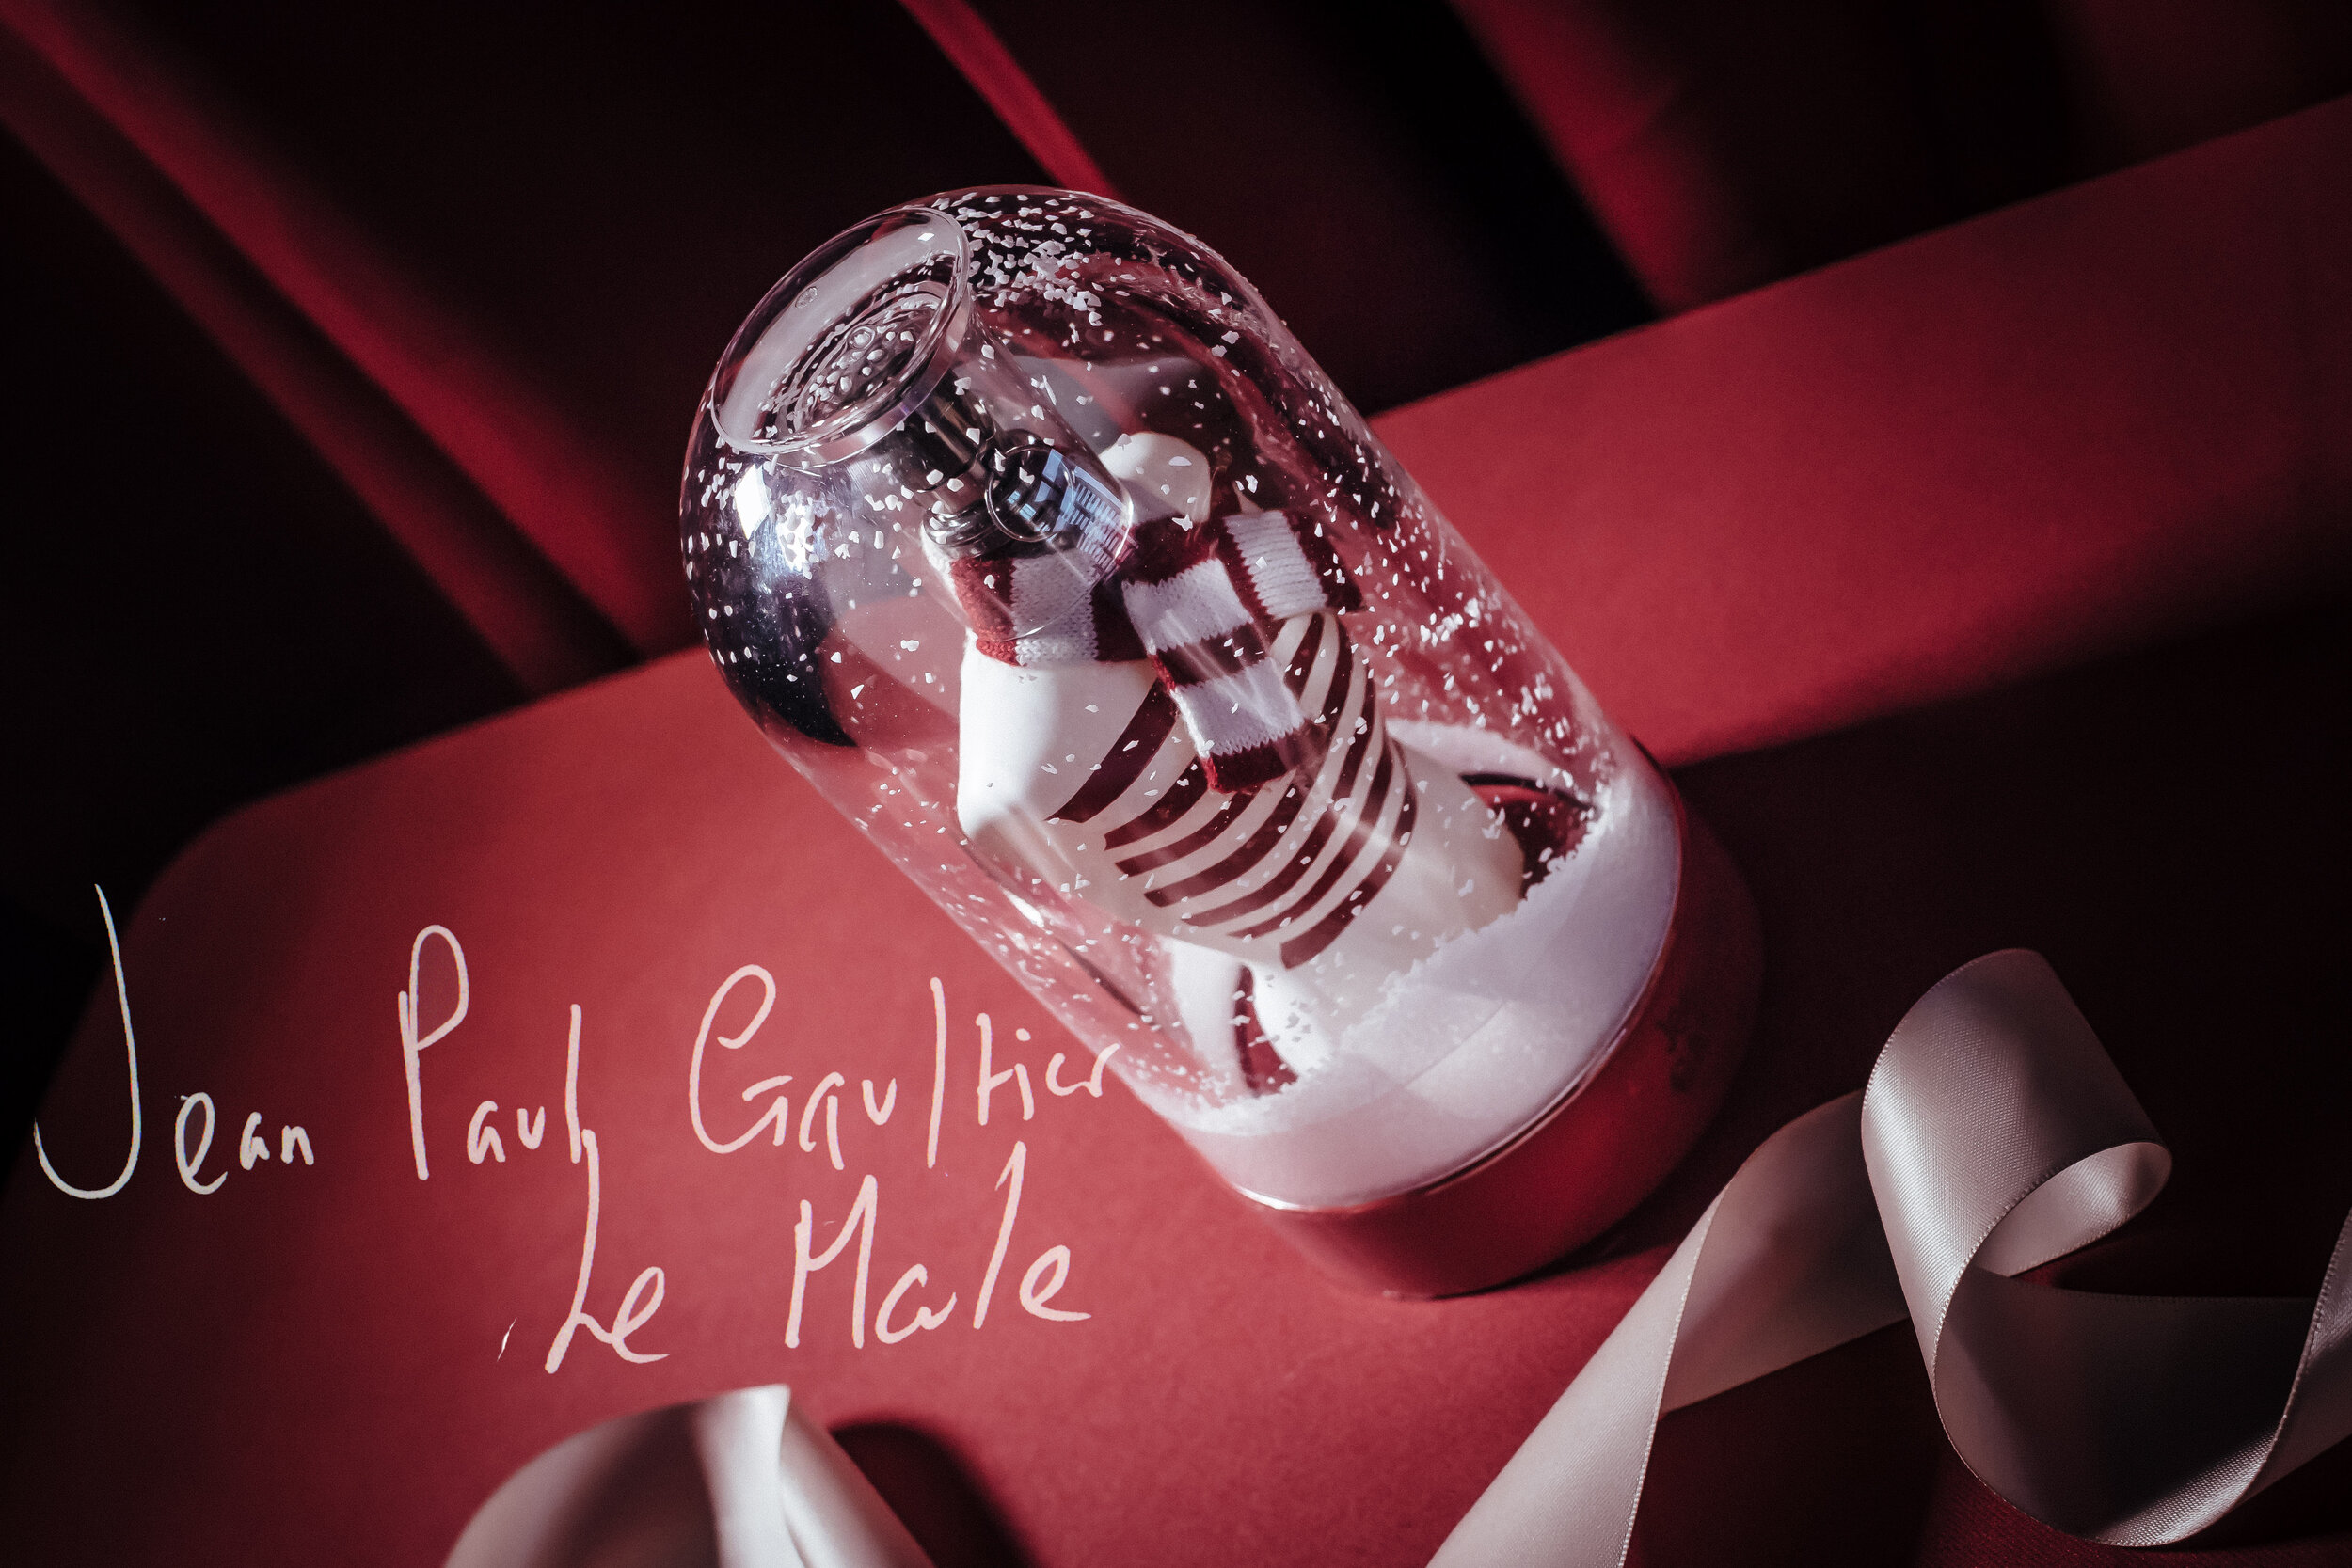 Jean Paul Gaultier Le male christmas edition snow globe